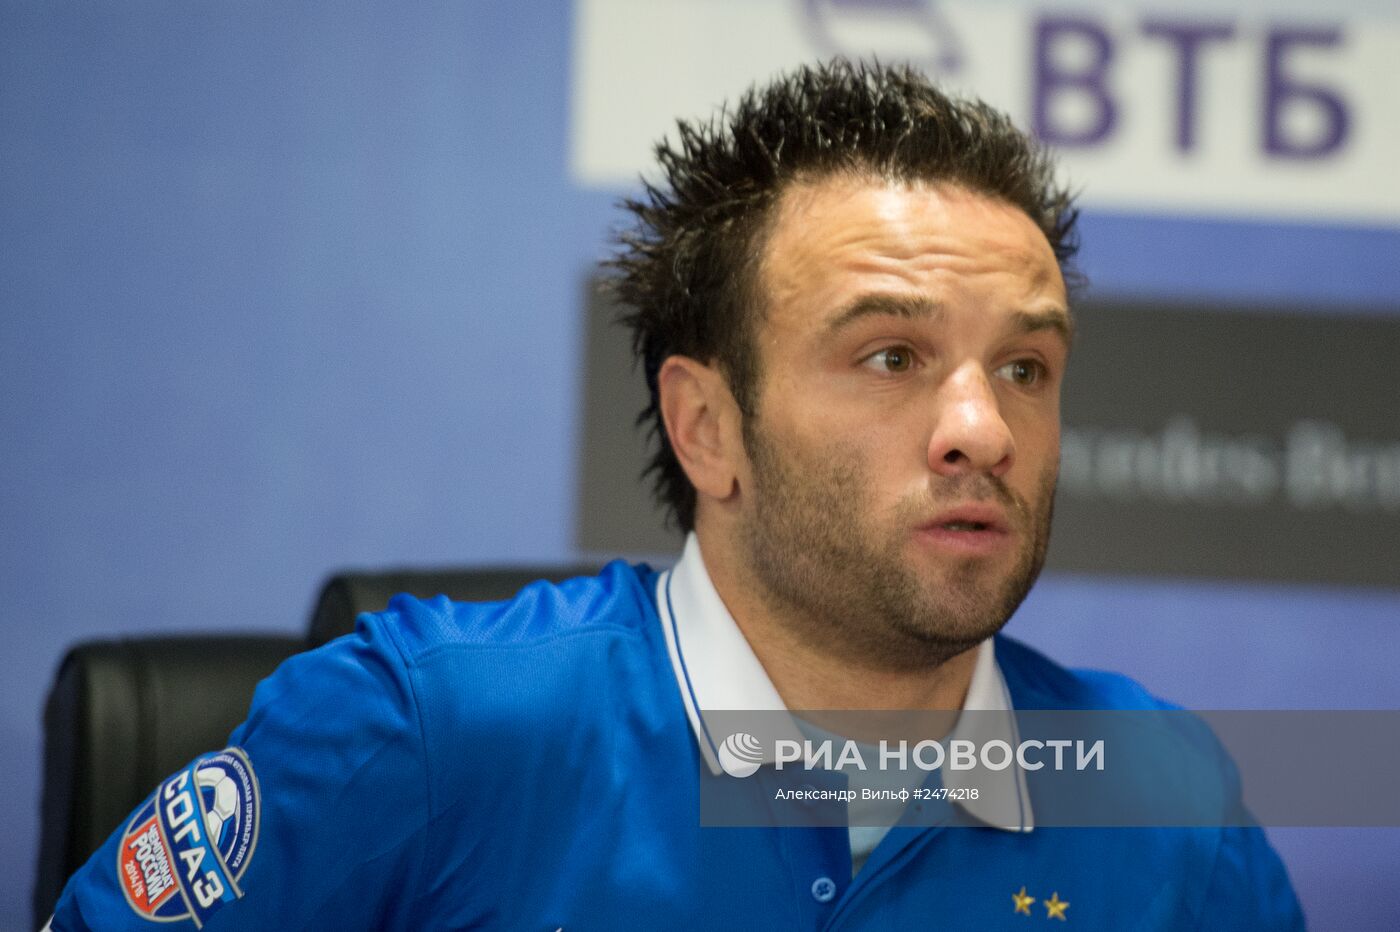 Футболист Матье Вальбуэна представлен в качестве игрока ФК "Динамо"